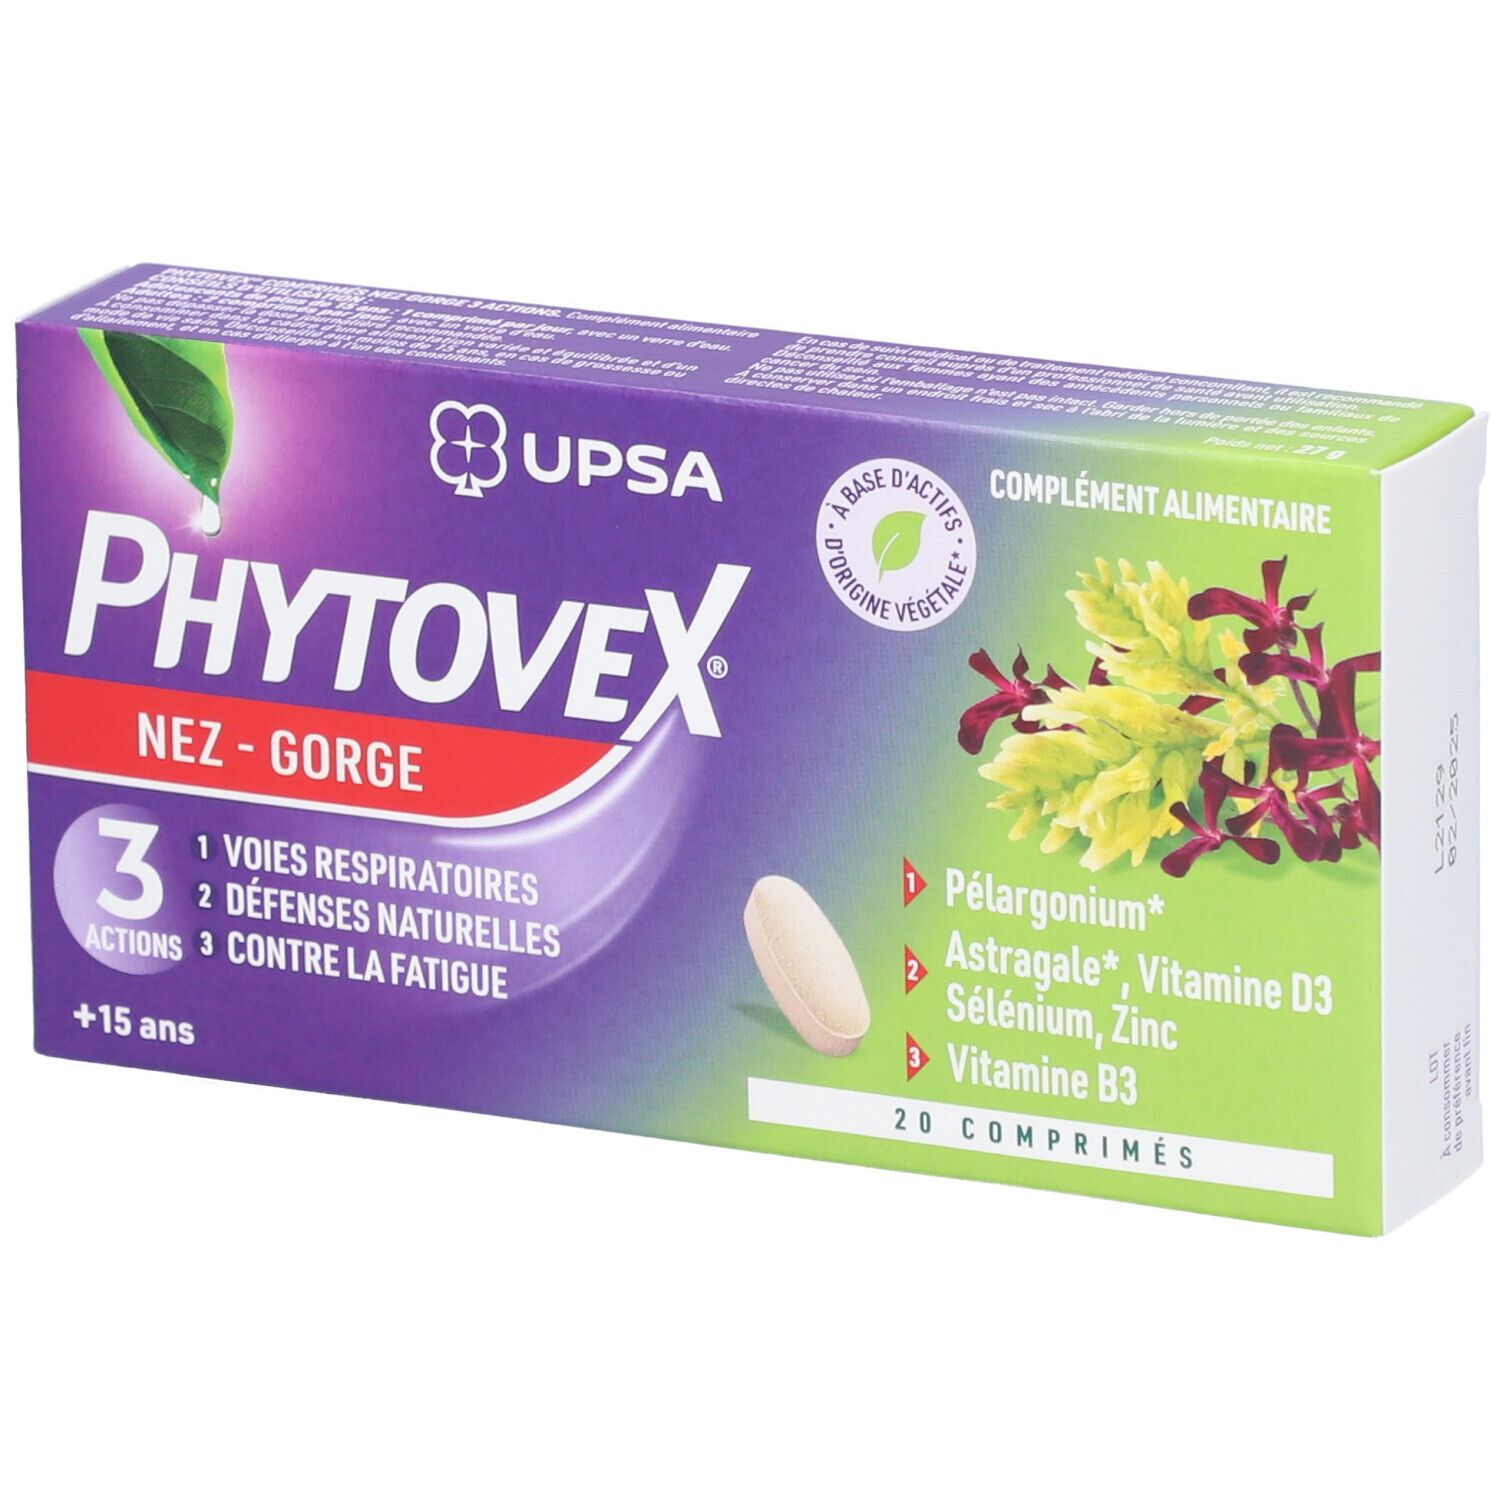 Phytovex Nez-Gorge 3 Actions Upsa, 20 comprimés - Adulte & Ado dès 15ans - Complément alimentaire Sa